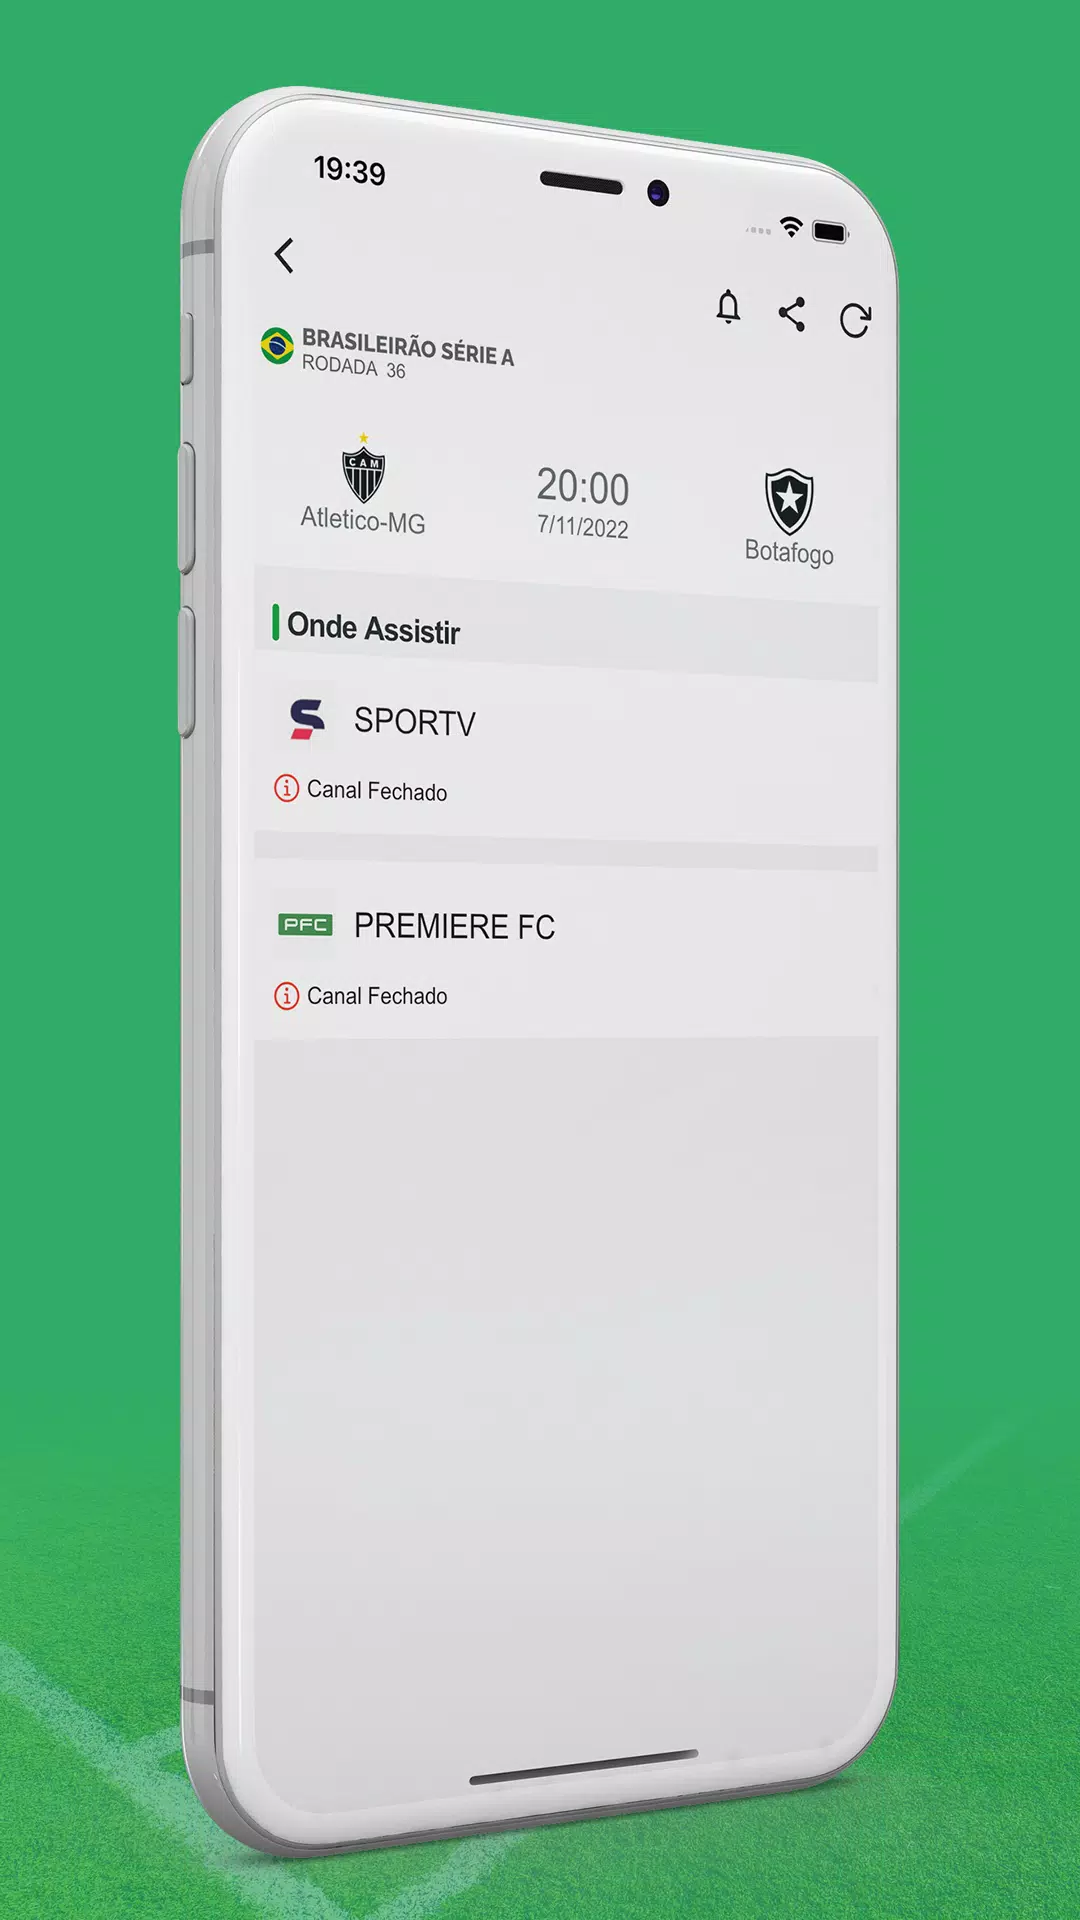 Futebol na TV (Guia de Jogos) App, By Futebol na TV